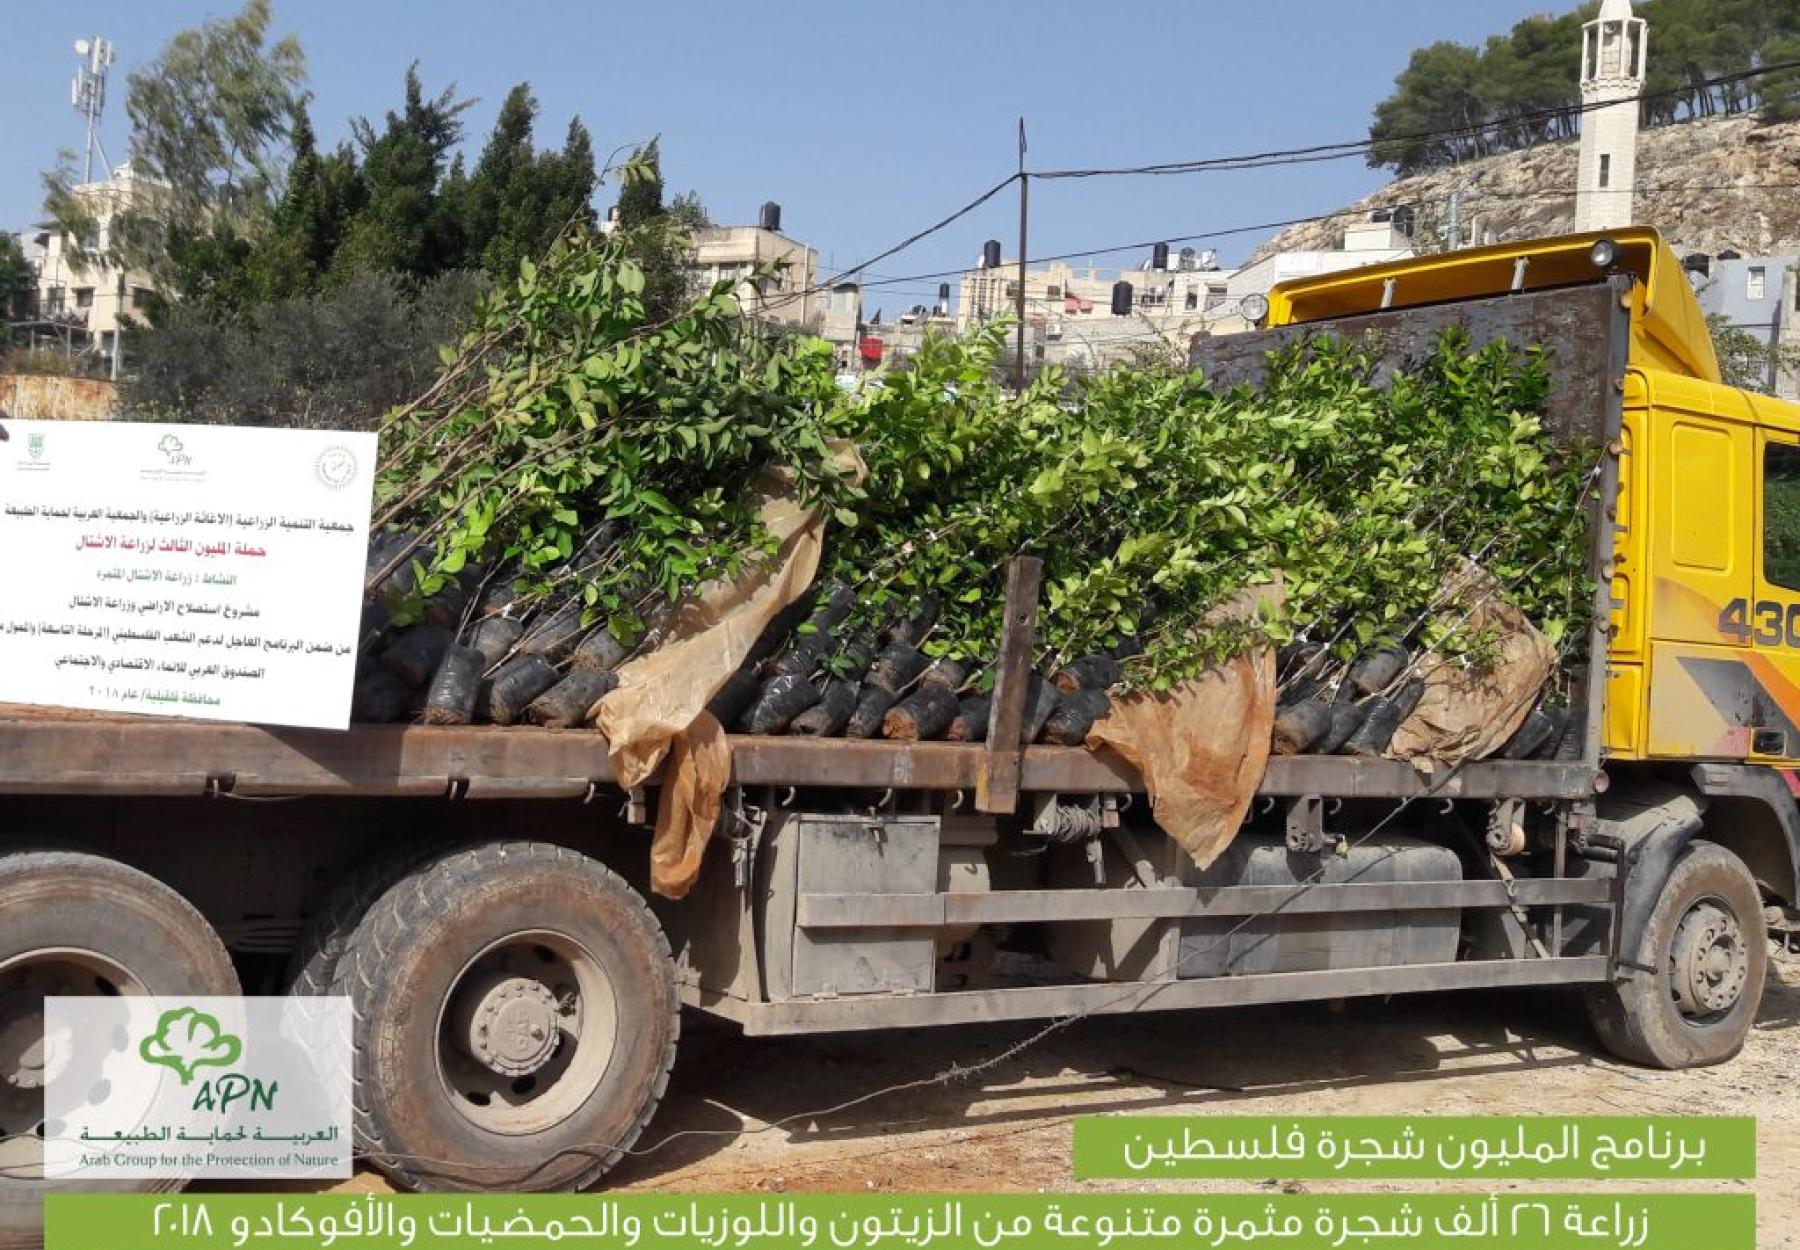 المليون شجرة تزرع 26 ألف شجرة في قرى شمال فلسطين المهددة بالمصادرة